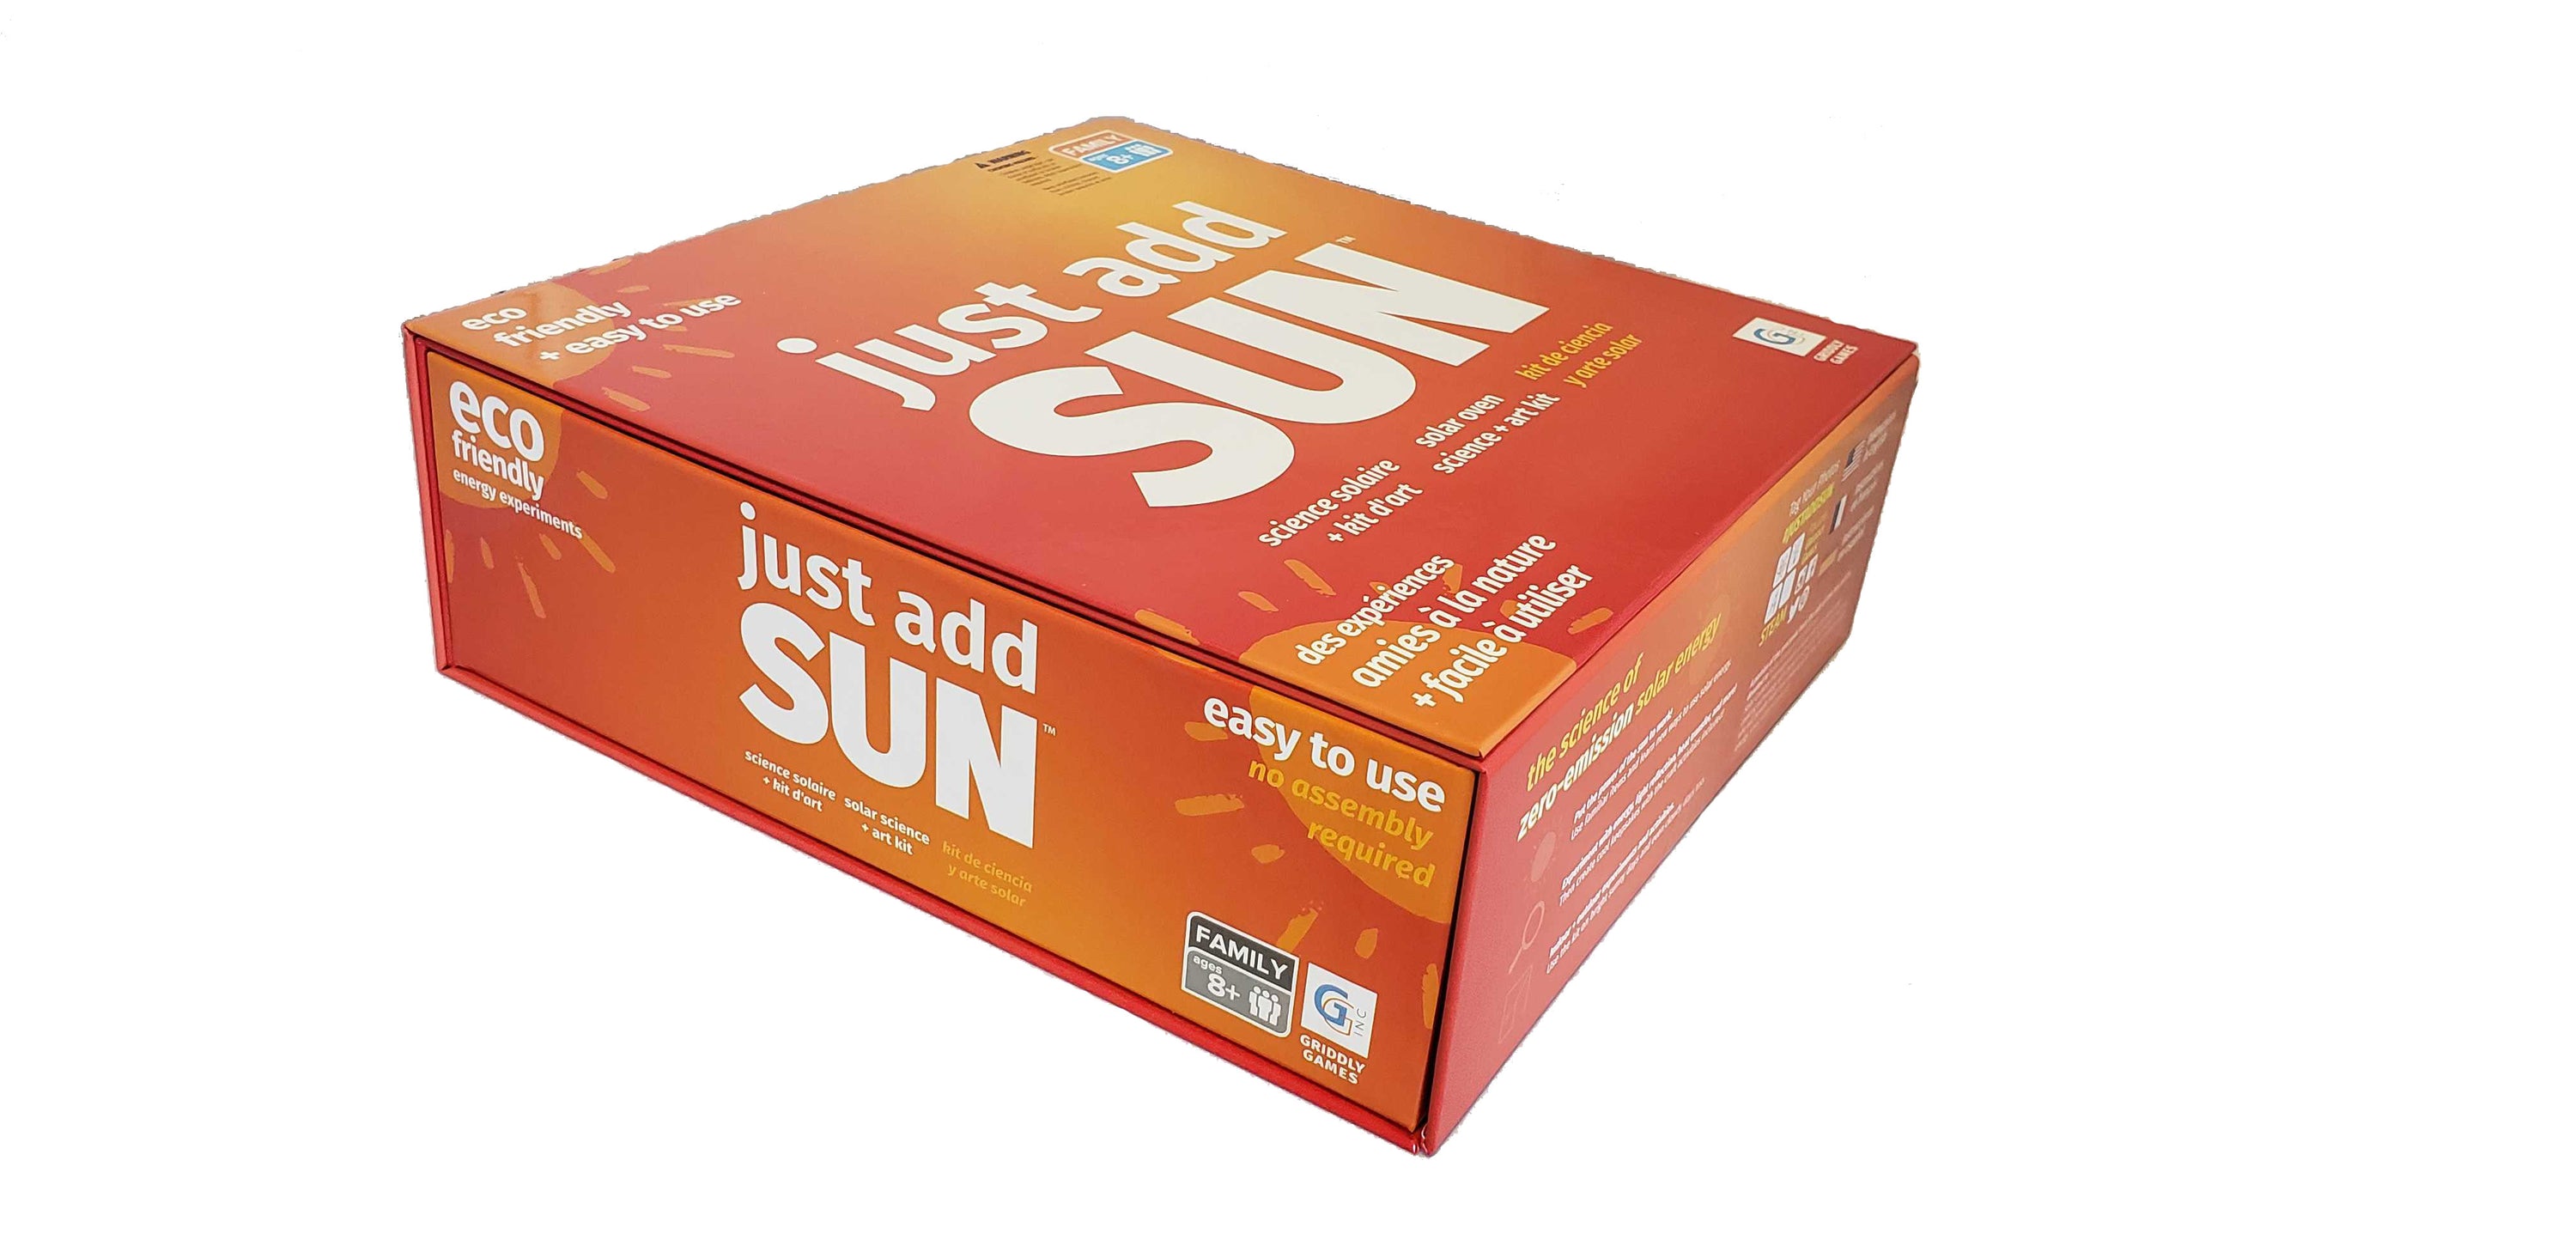 Just Add Sun STEAM Science & Art Kit